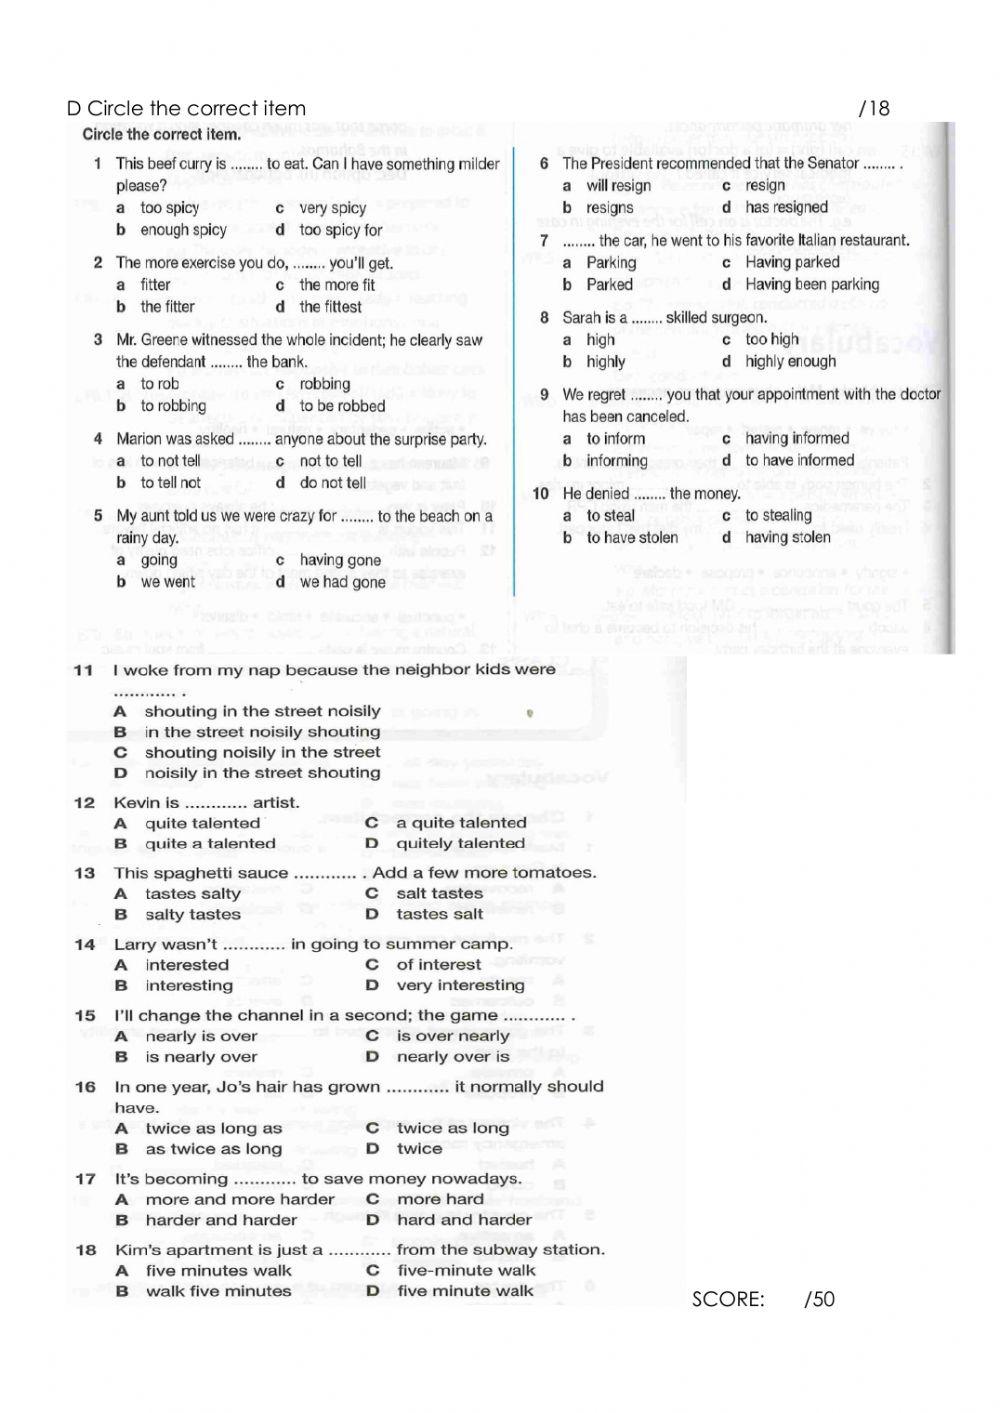 Quizzes Units 9 - 16, PDF, Curry